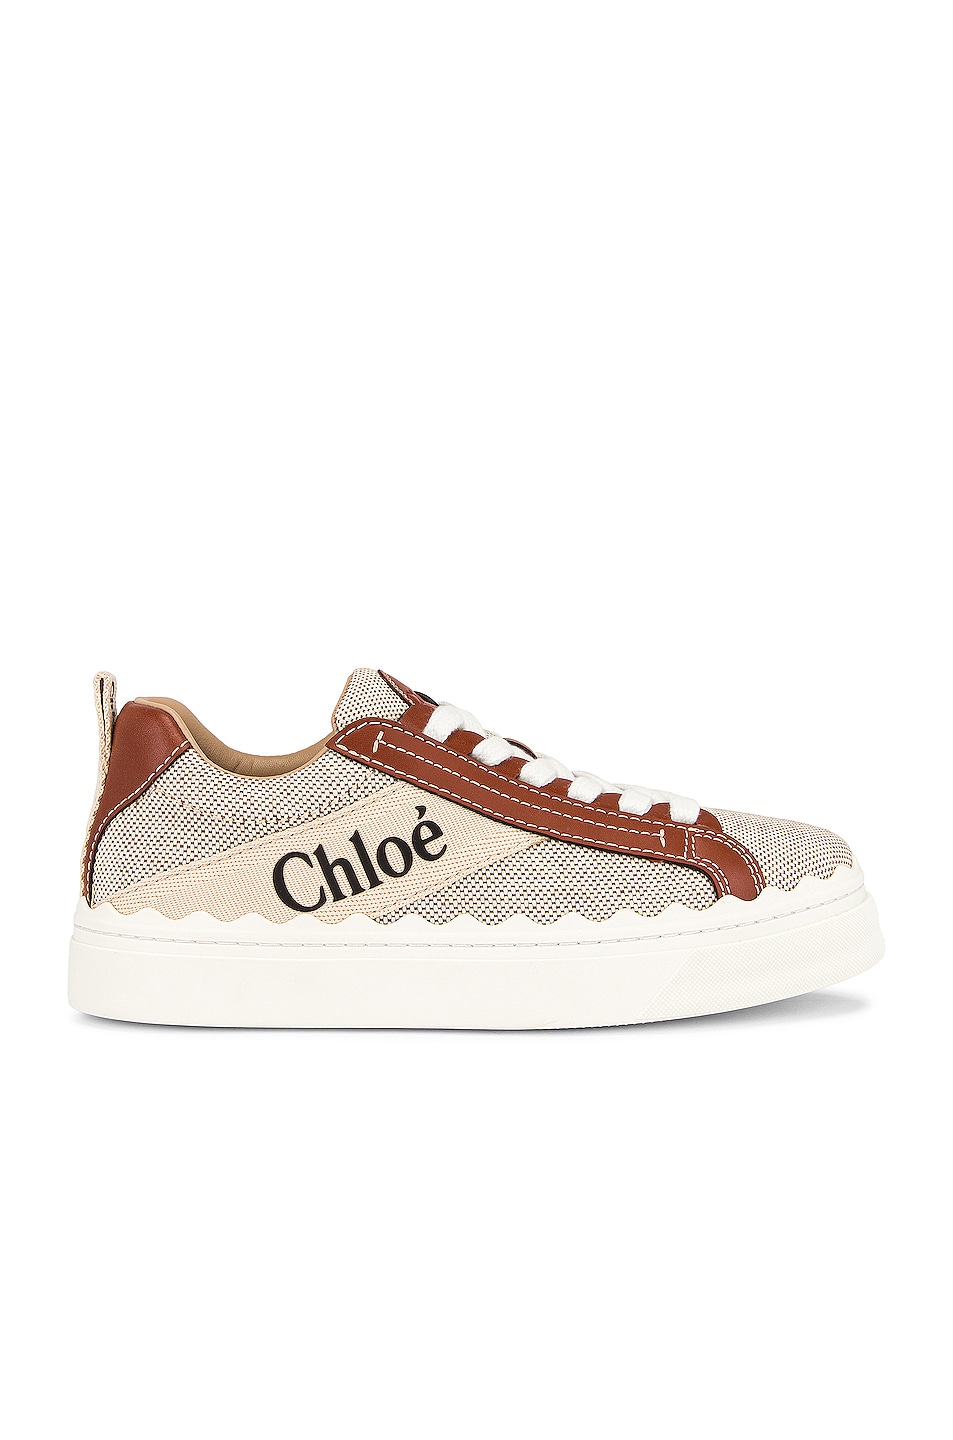 Image 1 of Chloe Lauren Sneakers in White & Brown